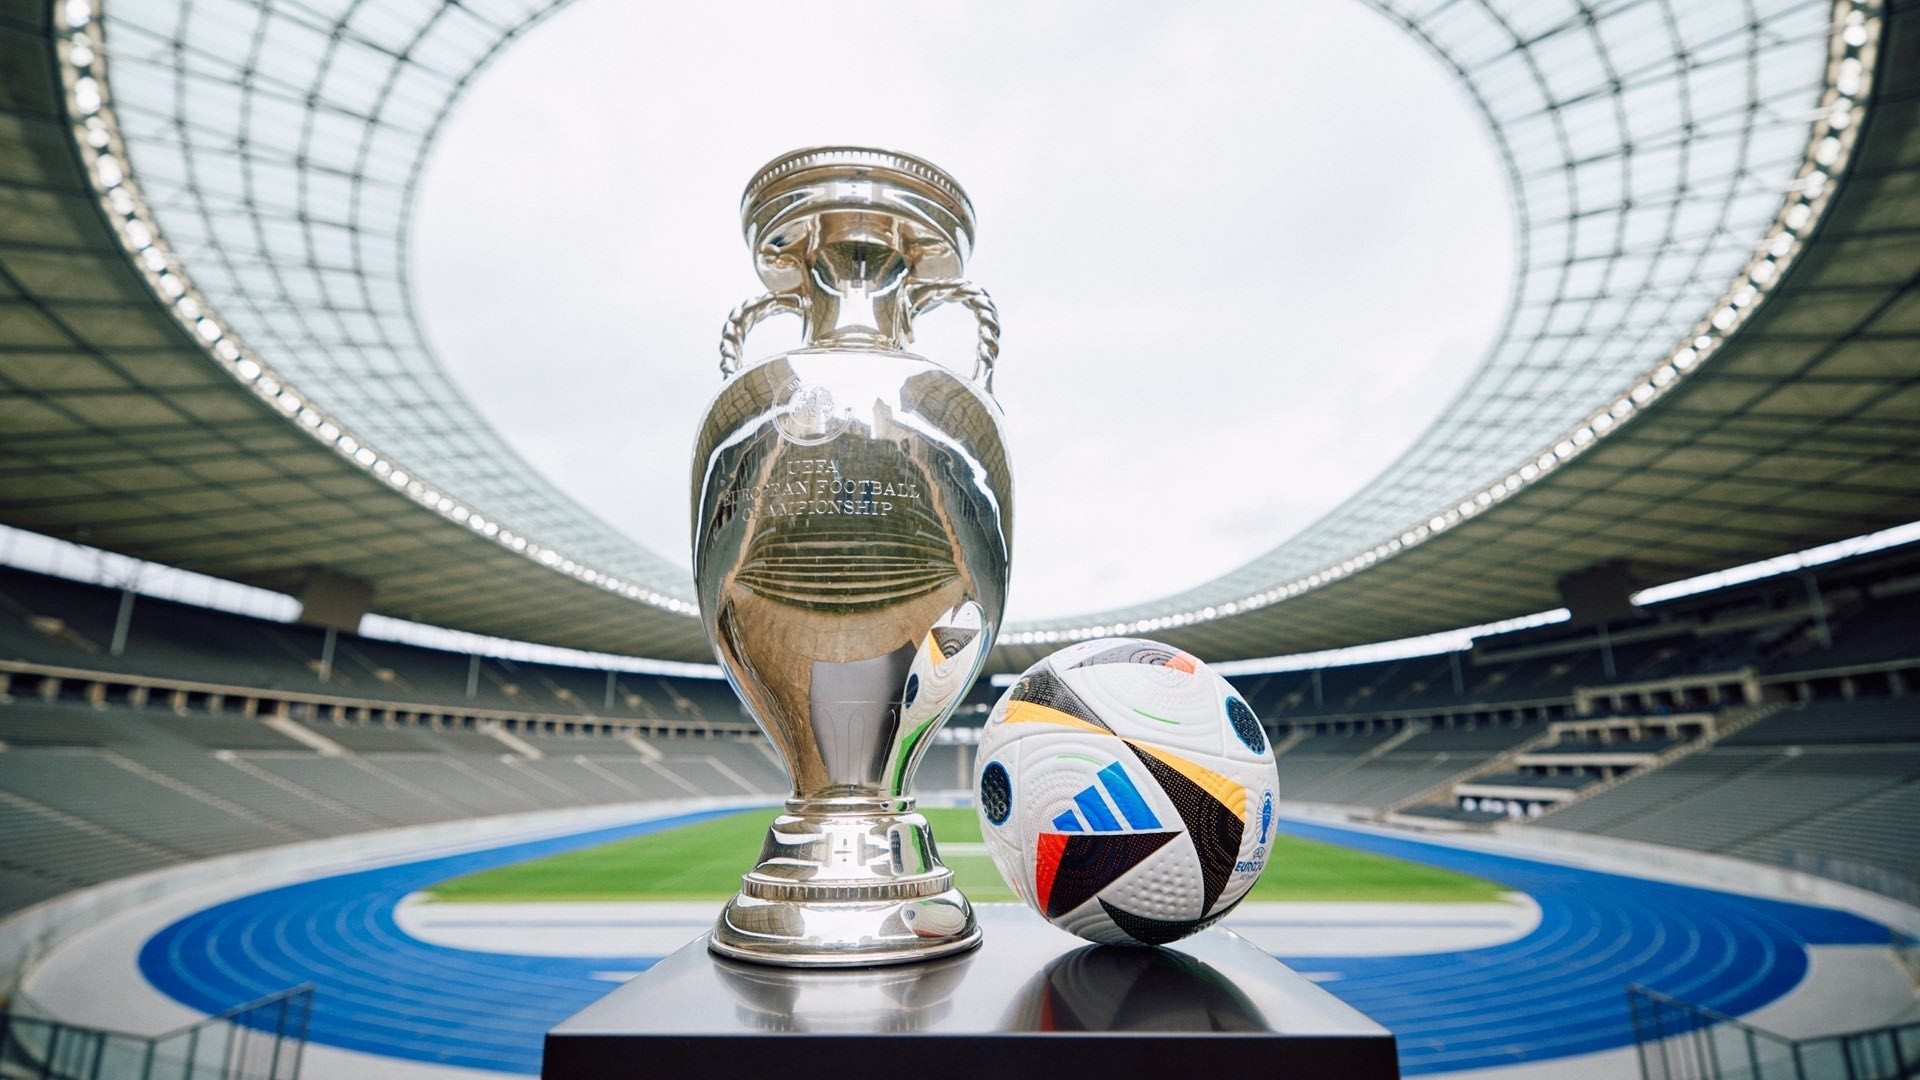 Fussballliebe (Tình yêu bóng đá) là tên gọi của trái bóng chính thức tại EURO 2024. Trái bóng do hãng Adidas thiết kế và sản xuất với những họa tiết đầy màu sắc, phản ánh năng lượng của ngày hội bóng đá tại châu Âu. (Nguồn: Adidas)